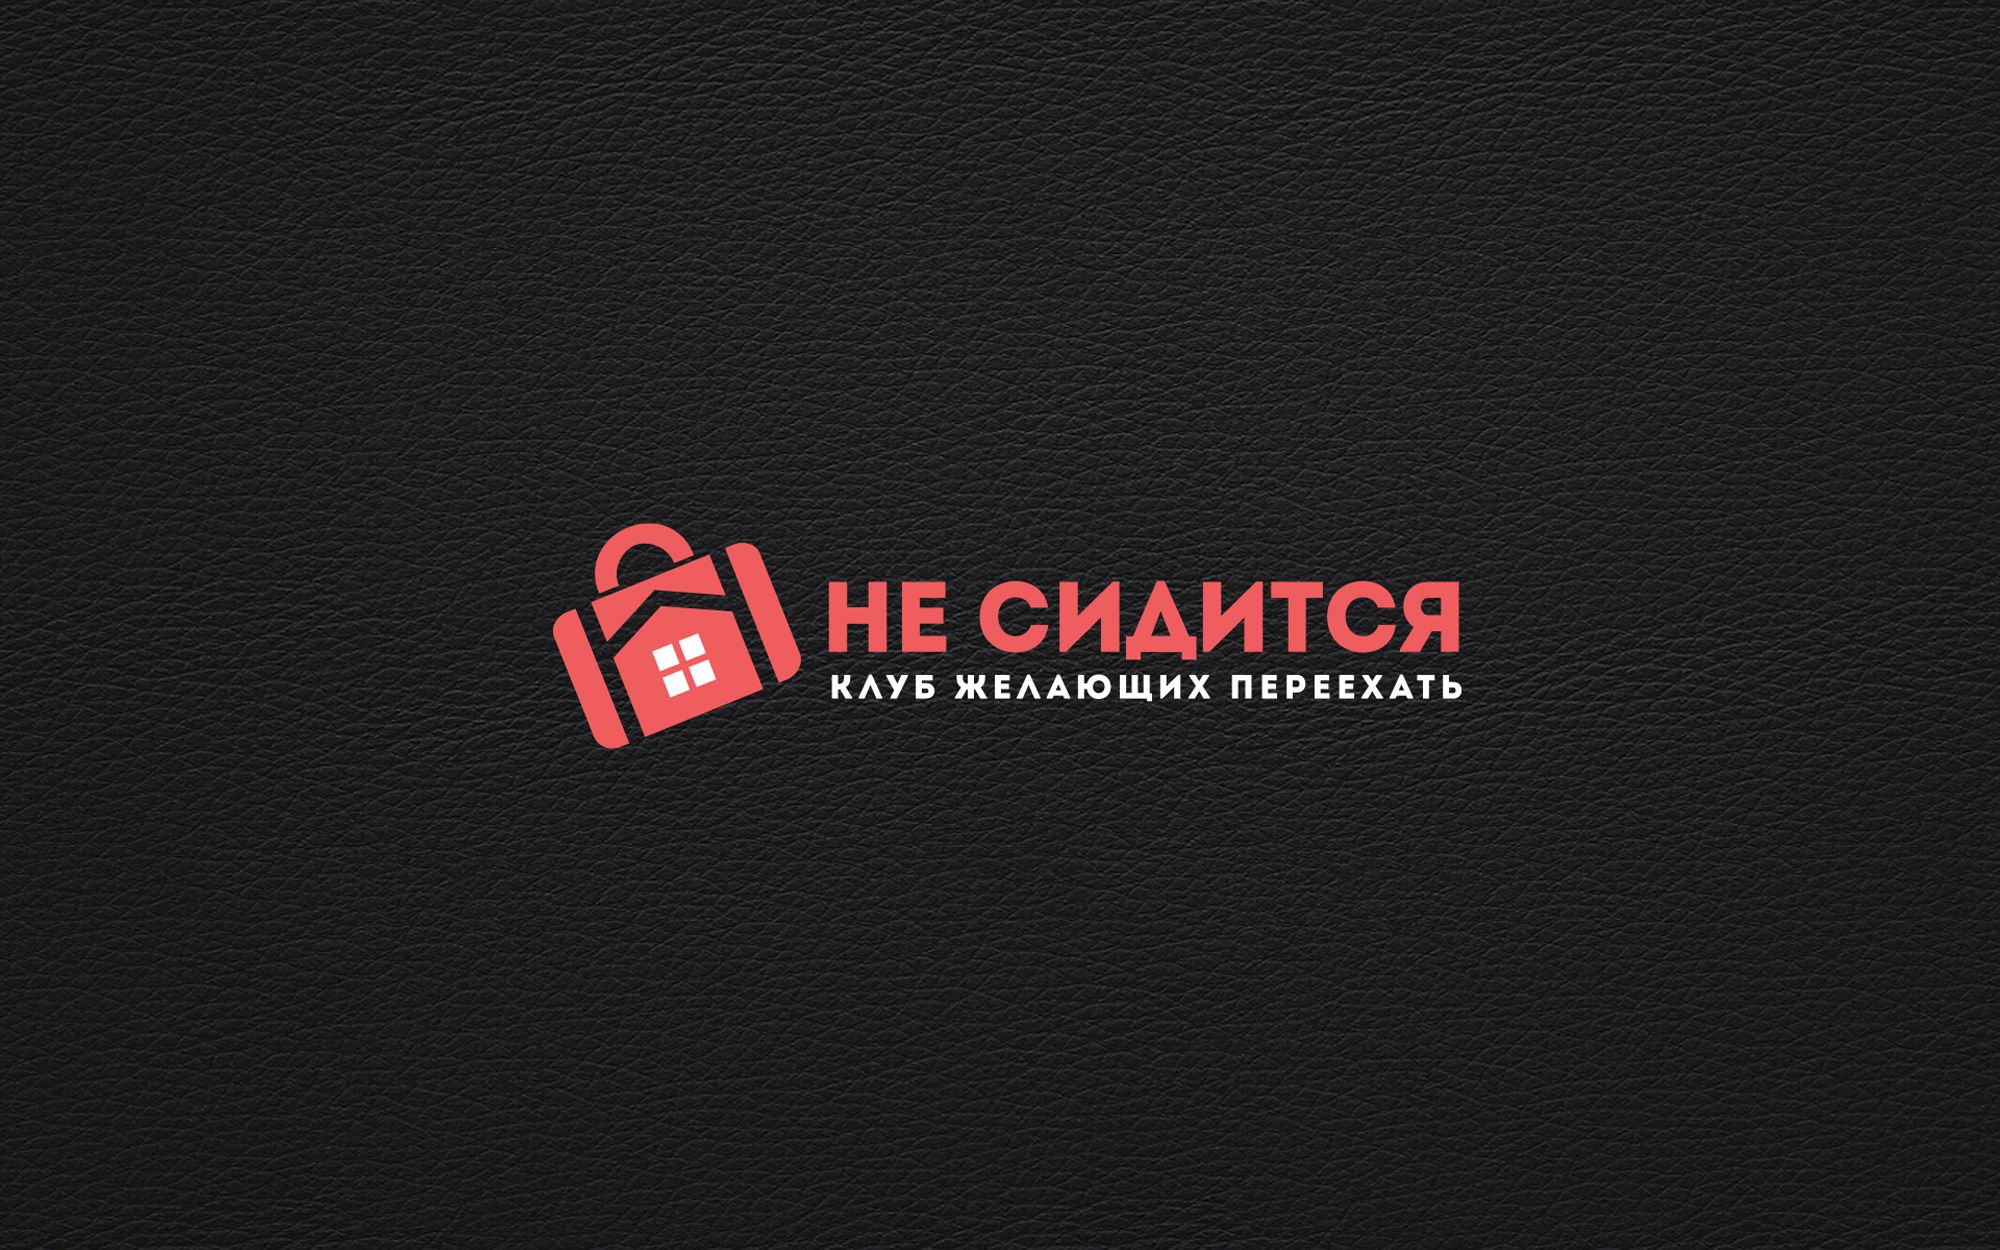 Логотип для интернет-проекта Не сидится - дизайнер Alphir